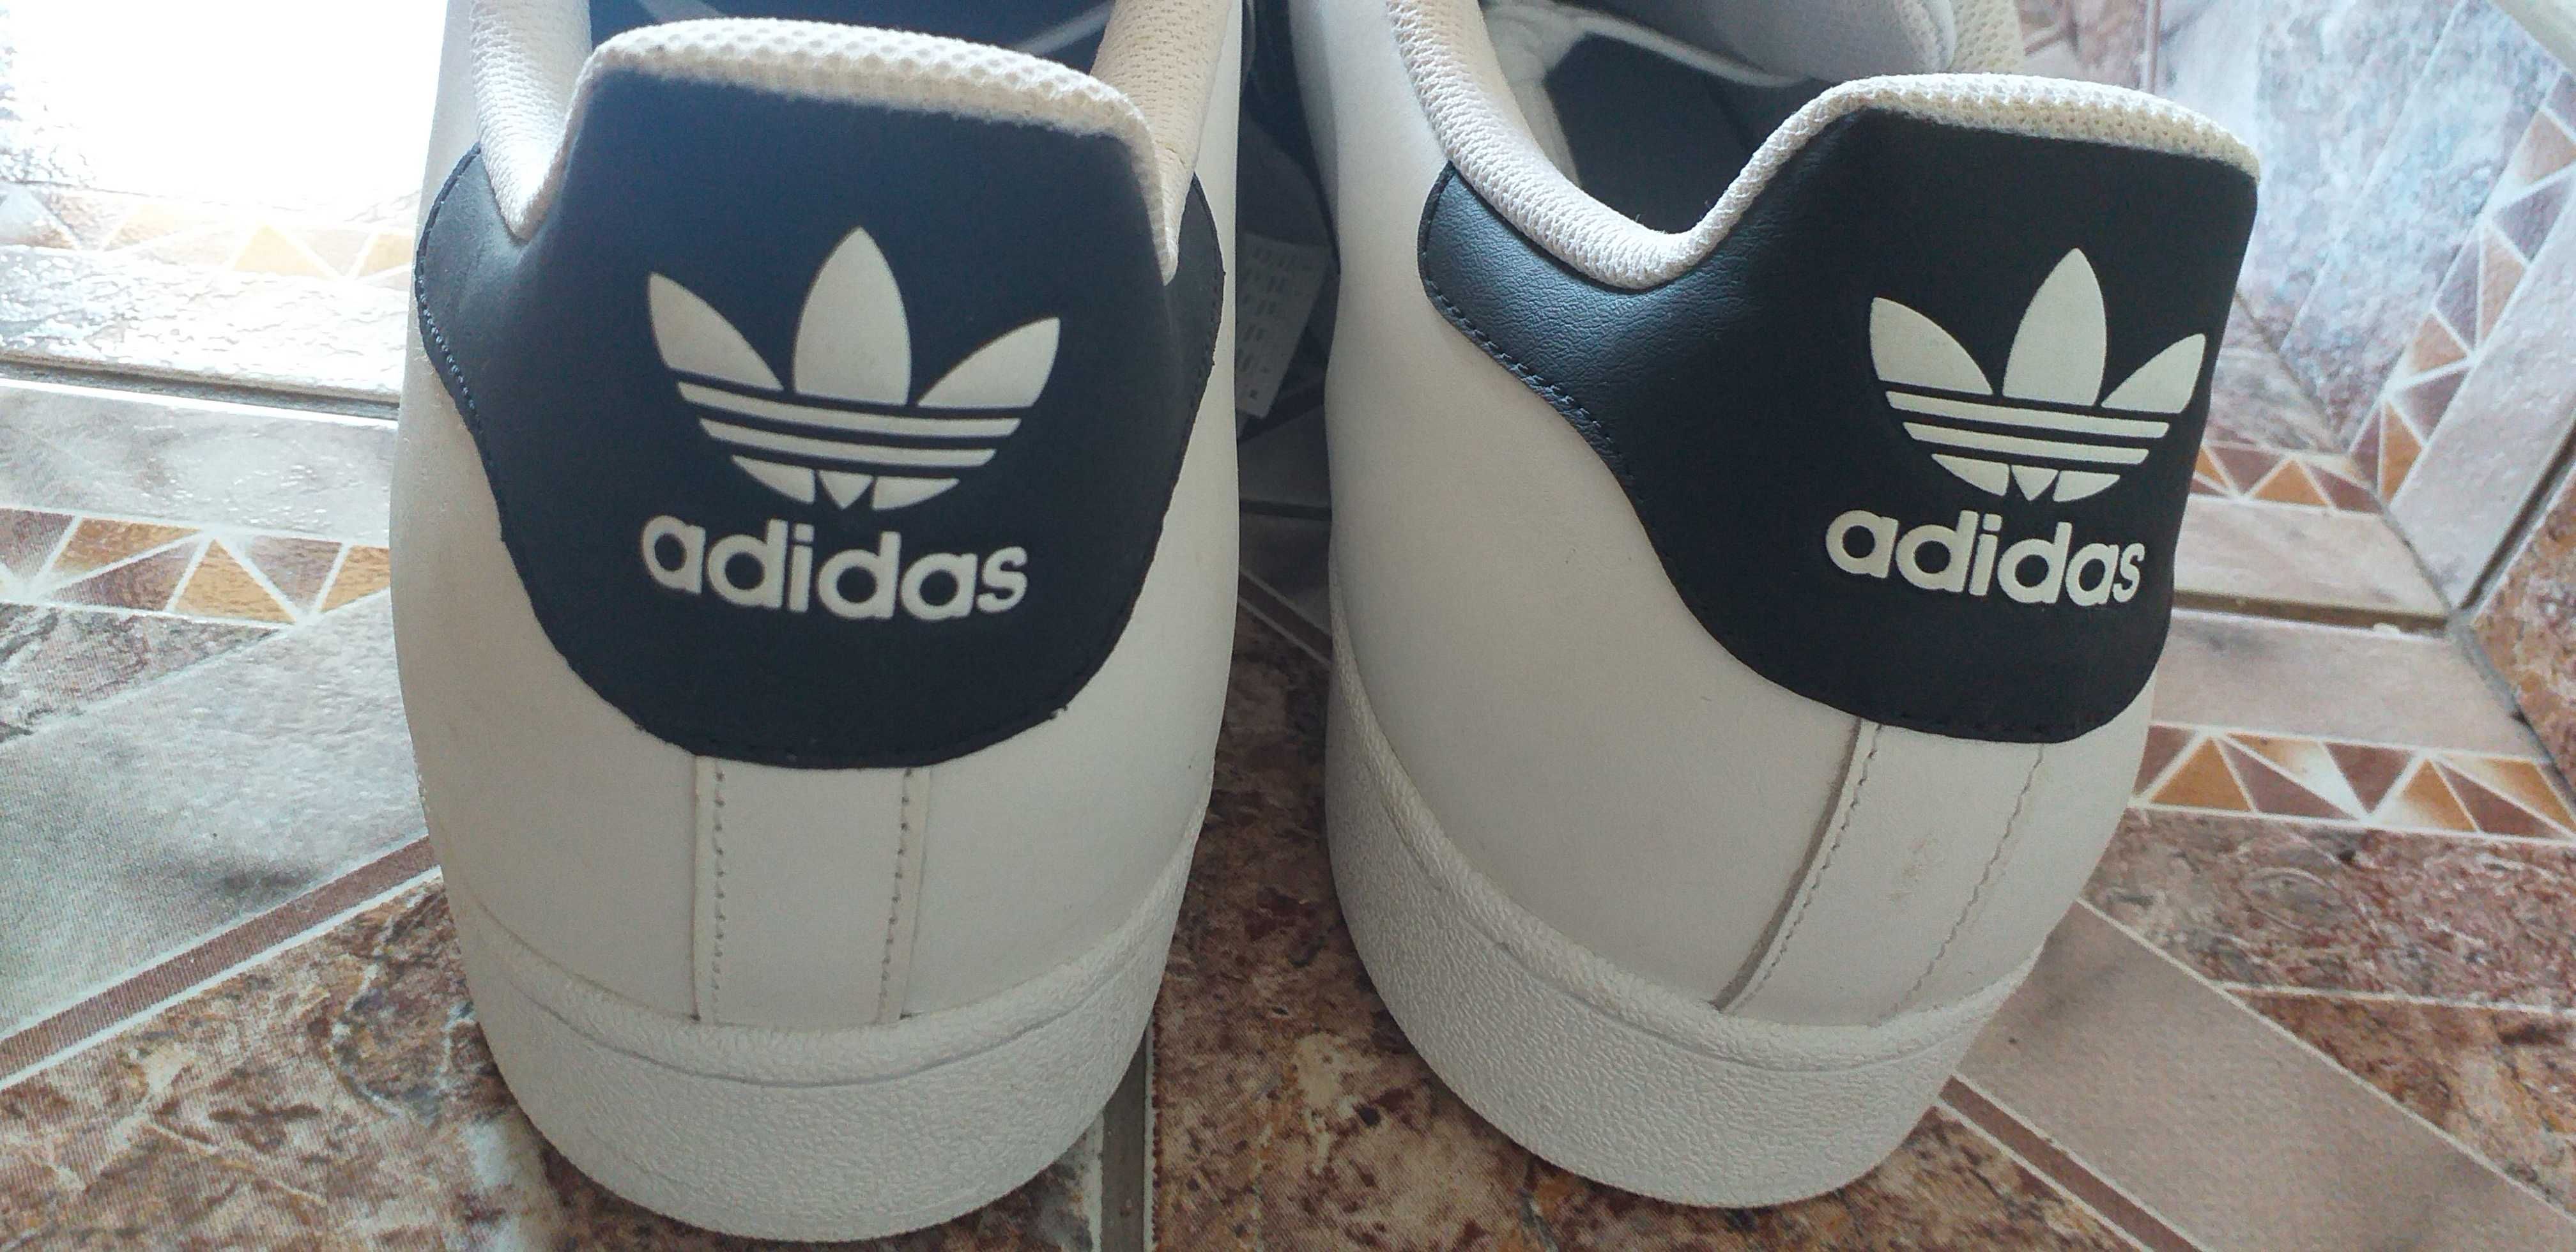 Adidasi Nr. 54 ,ADIDAS,piele naturala,made Indonesia/pantofi sport